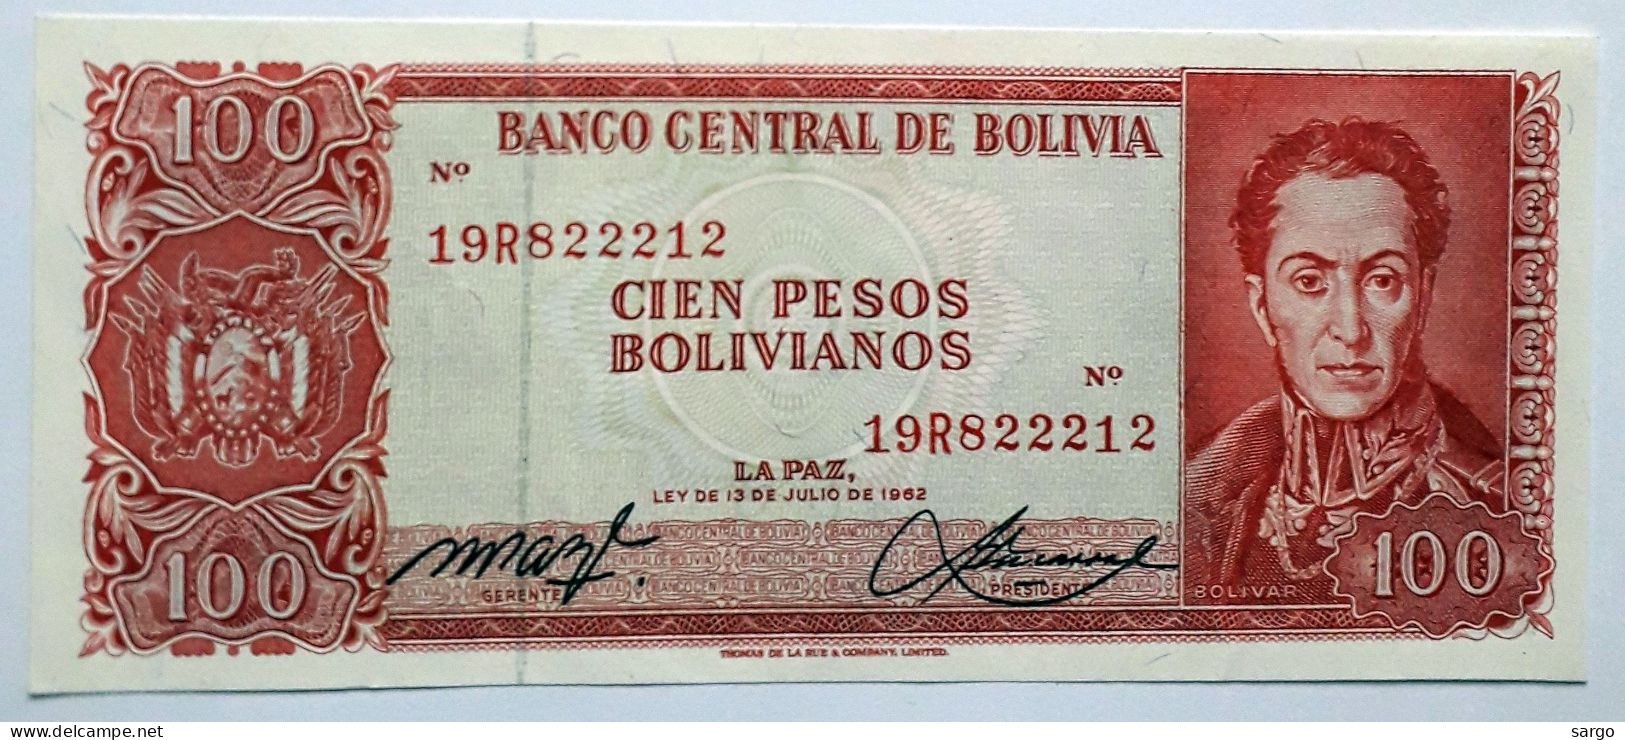 BOLIVIA - 100 PESOS BOLIVIANOS  - P 164  (1962) - UNC - BANKNOTES - PAPER MONEY - CARTAMONETA - - Bolivie